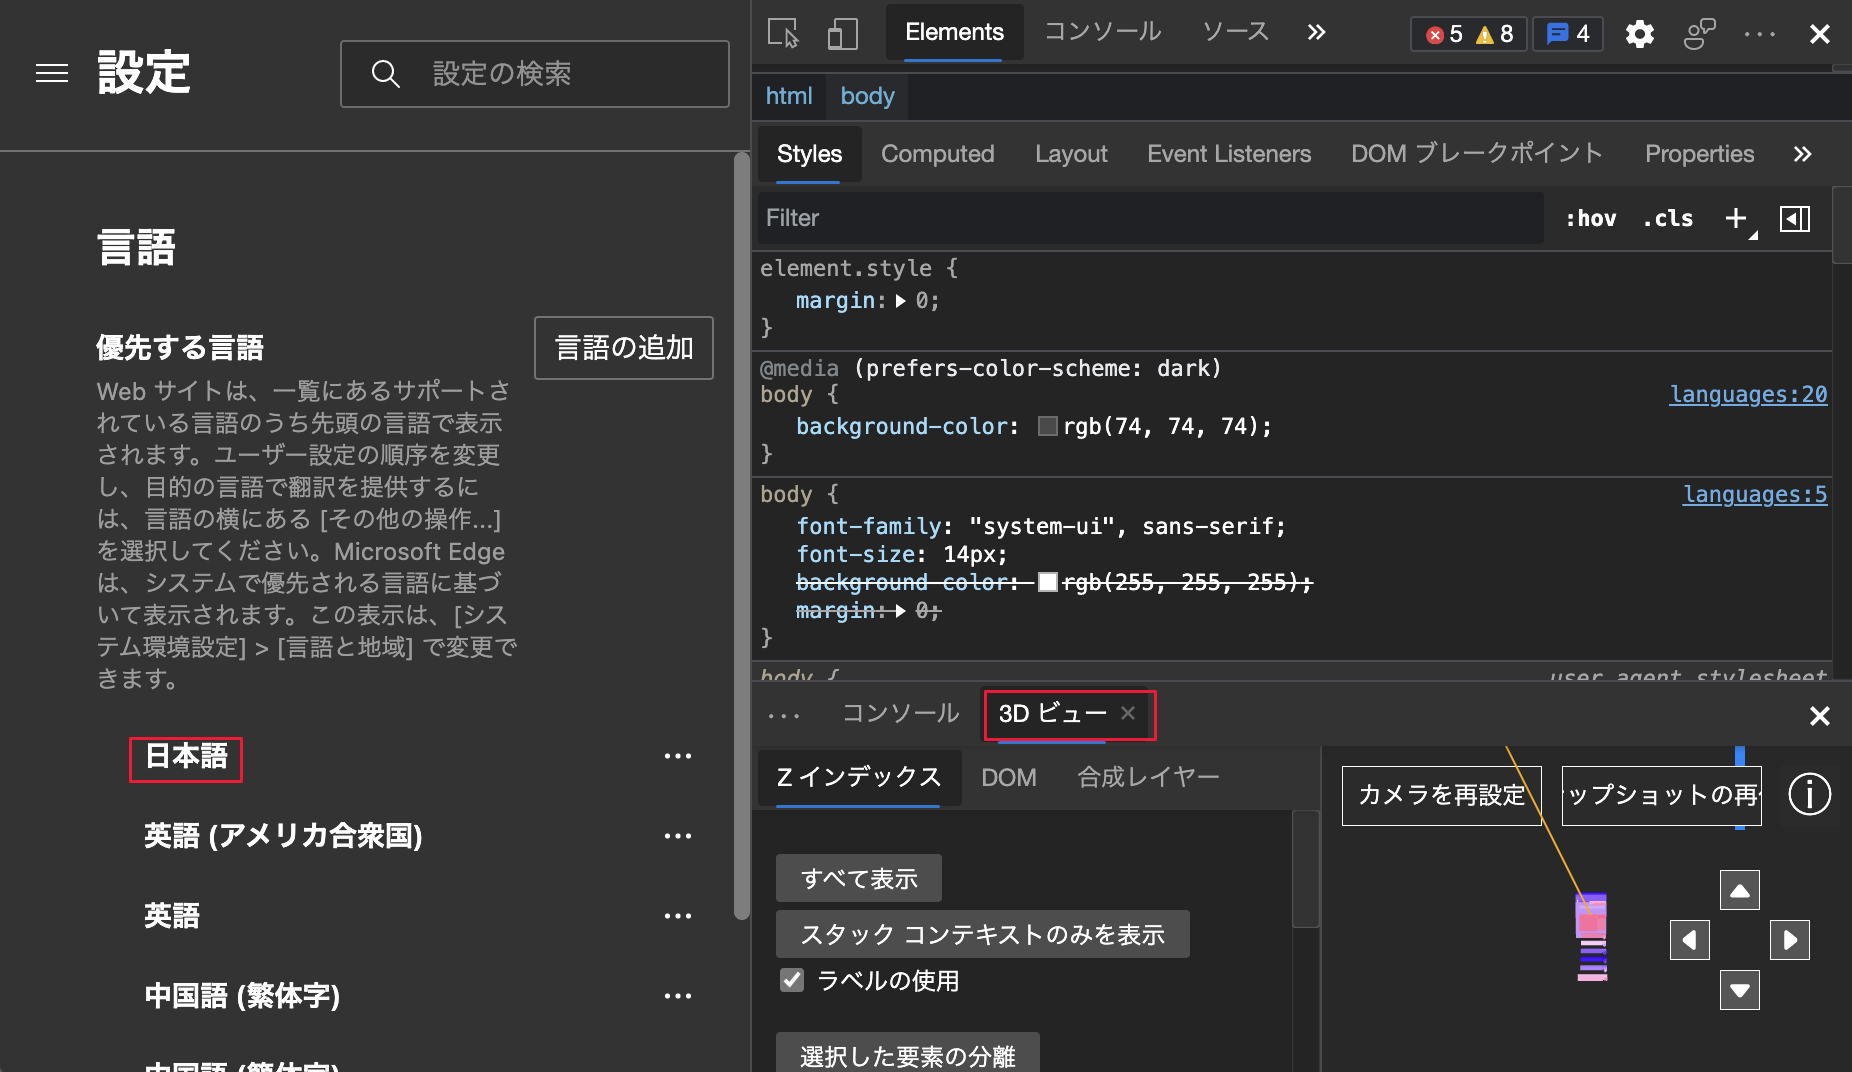 Браузер Microsoft Edge и средства разработки для японского языка